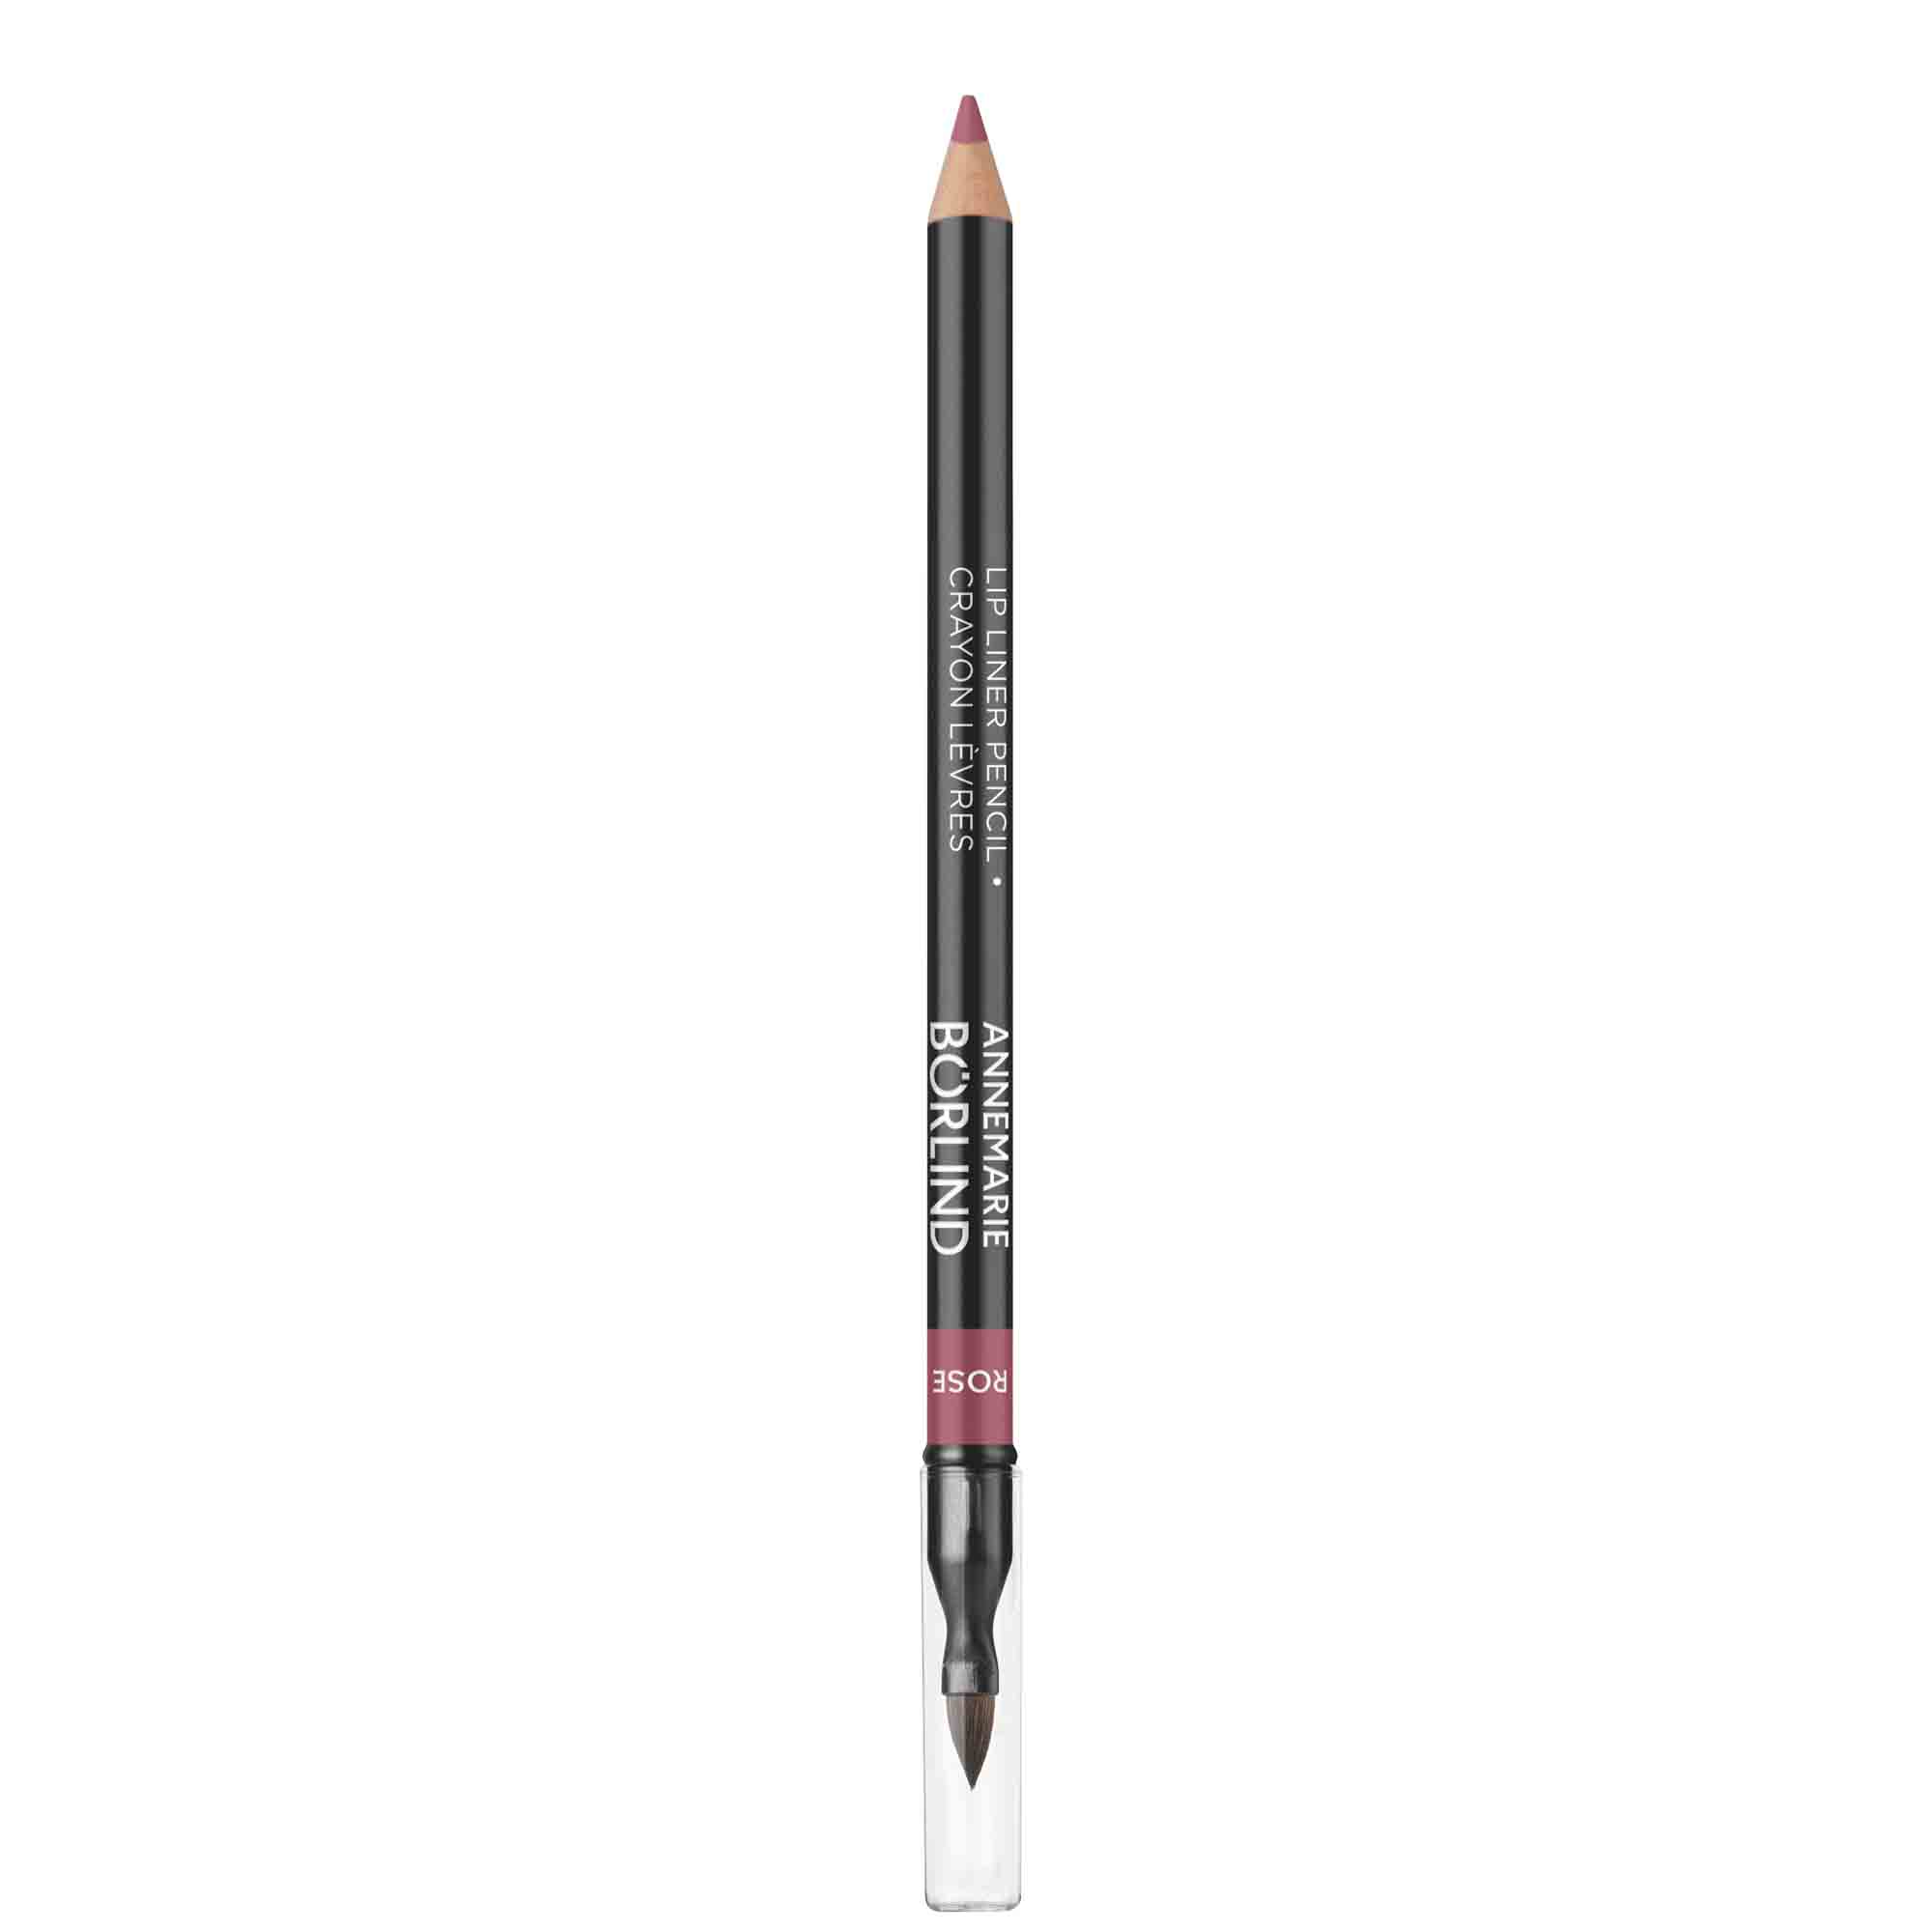 Карандаш для губ ANNEMARIE BORLIND Lip Liner Pencil контурный, с кисточкой, розовый, 1 г помада для губ annemarie borlind парижский красный 4 г